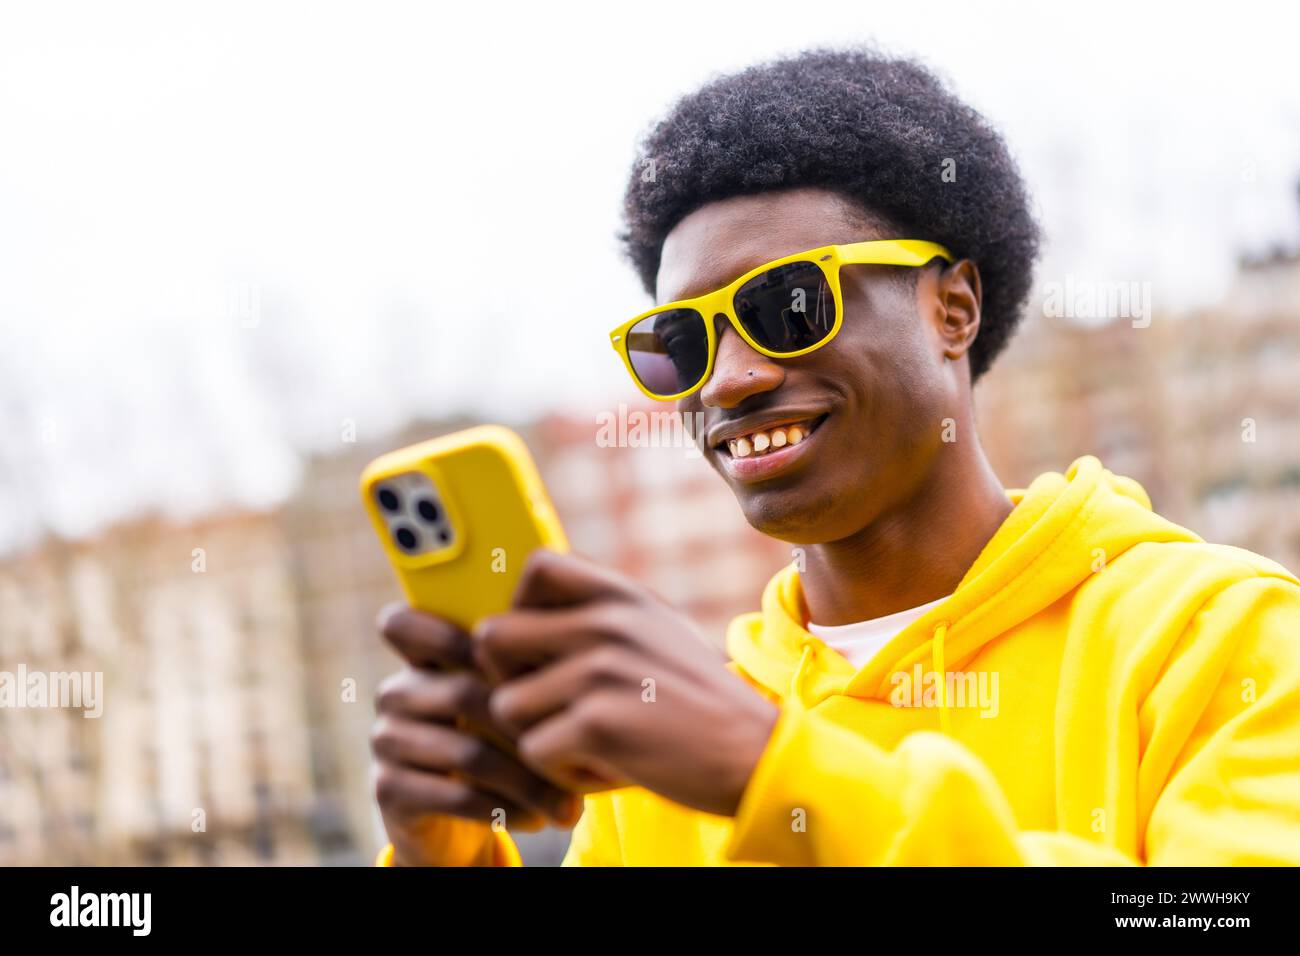 Porträt eines coolen, stylischen afrikaners, der in der Stadt das Telefon benutzt Stockfoto